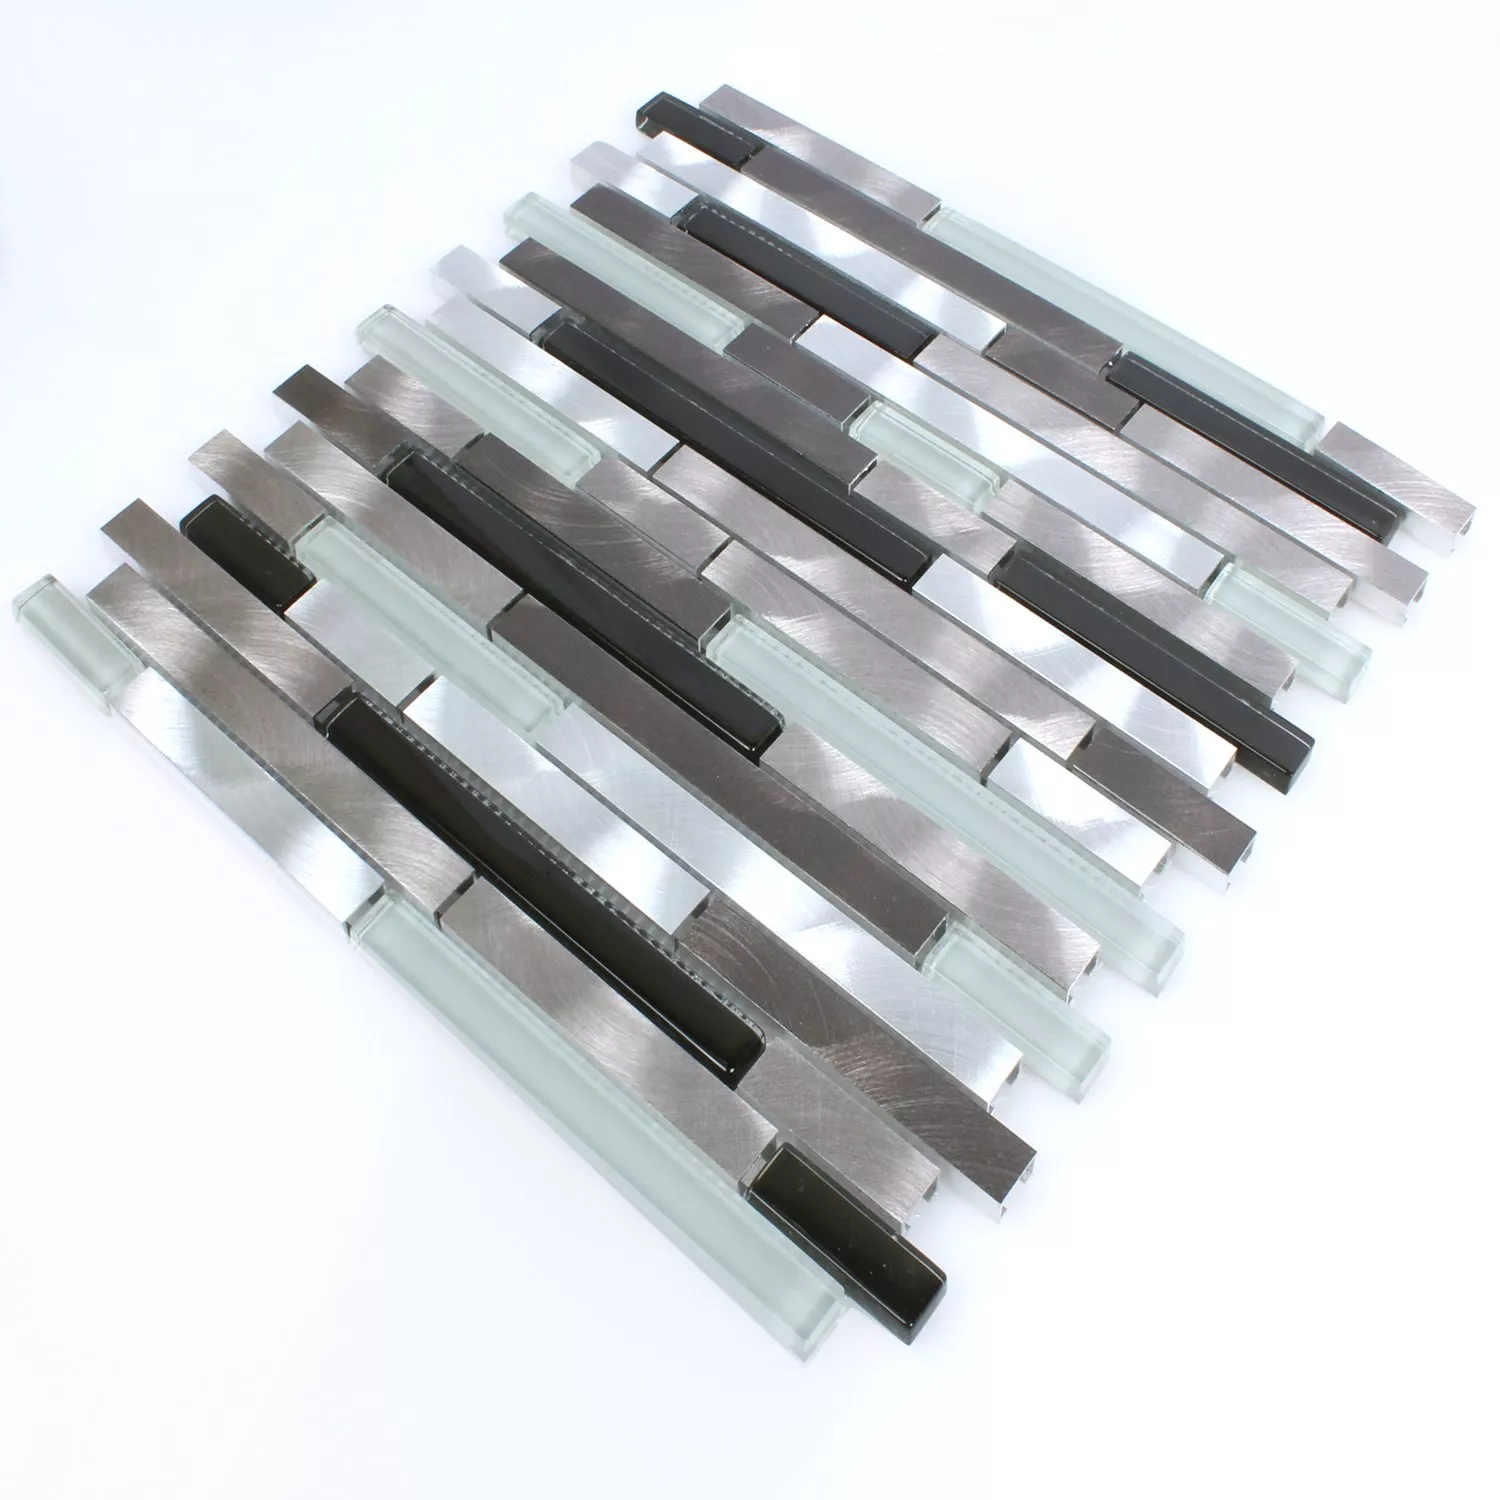 Mosaikfliesen Aluminium Glas Braun Schwarz Weiss Silber